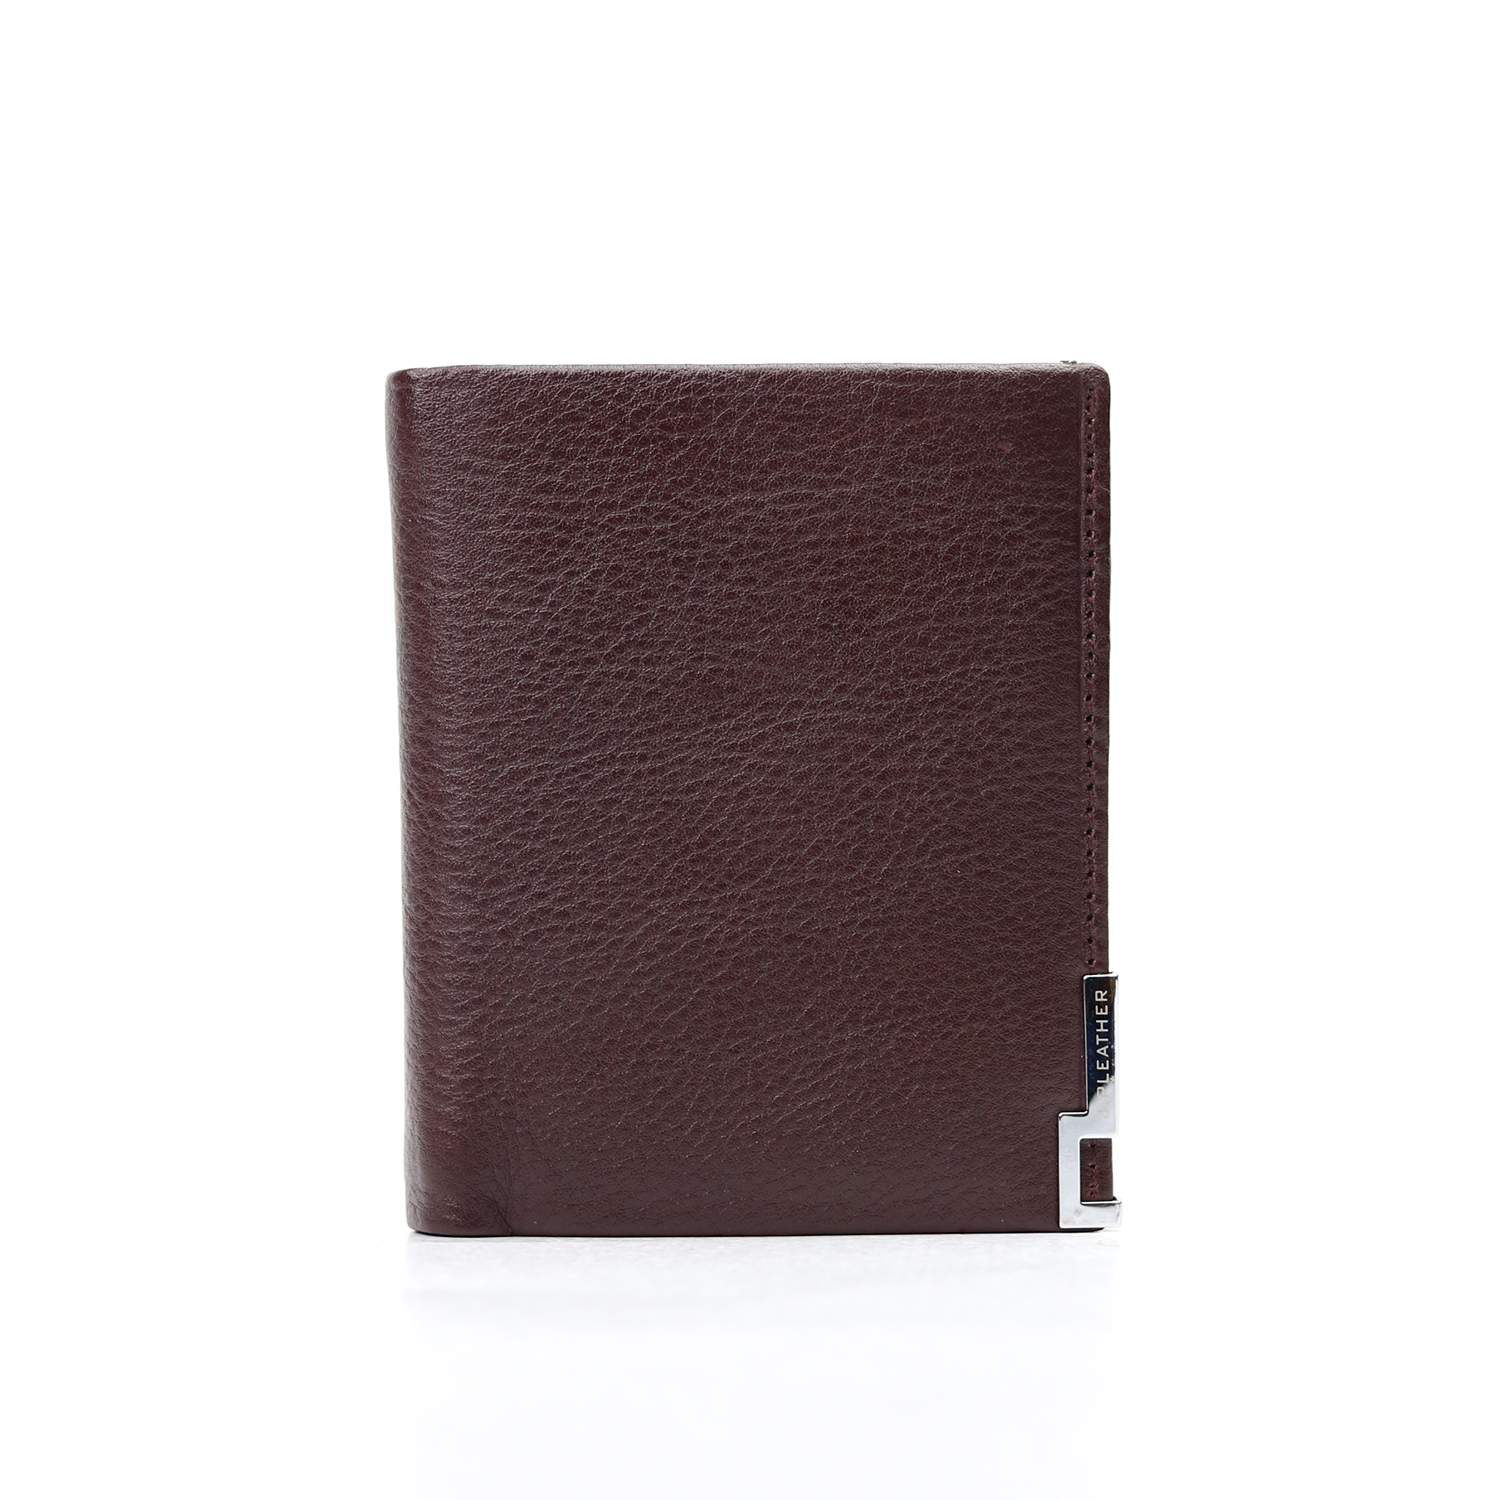 Plain Design Pu Leather Men's Short Wallet